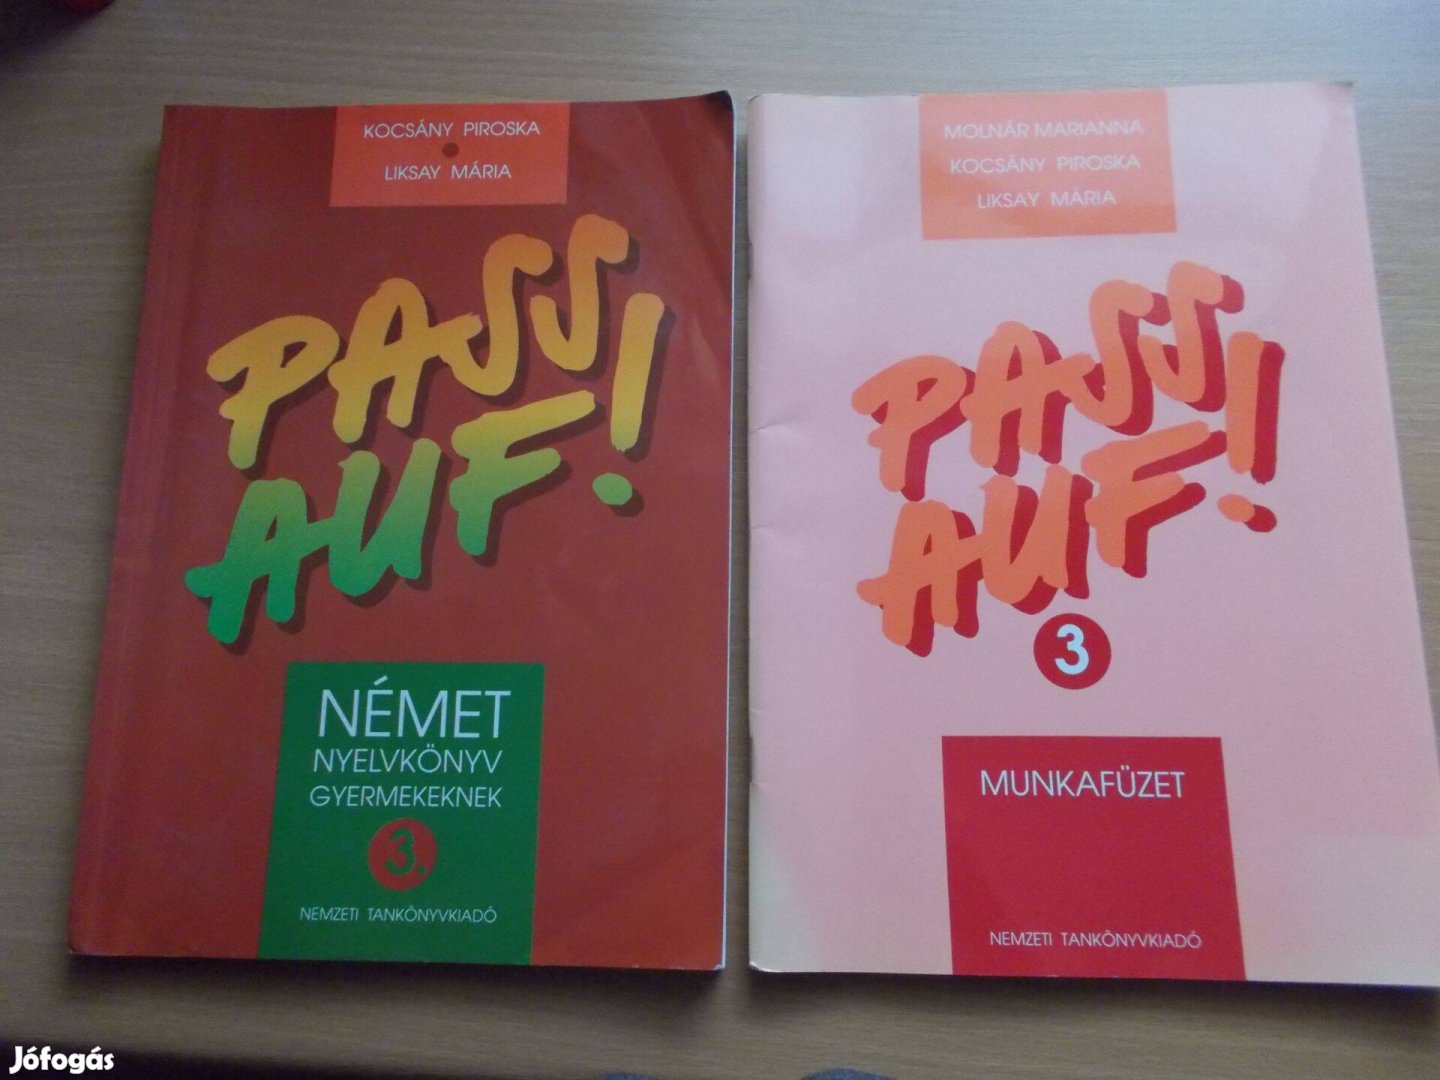 Pass auf! - Német nyelvkönyv 3. + Munkafüzet gyermekeknek